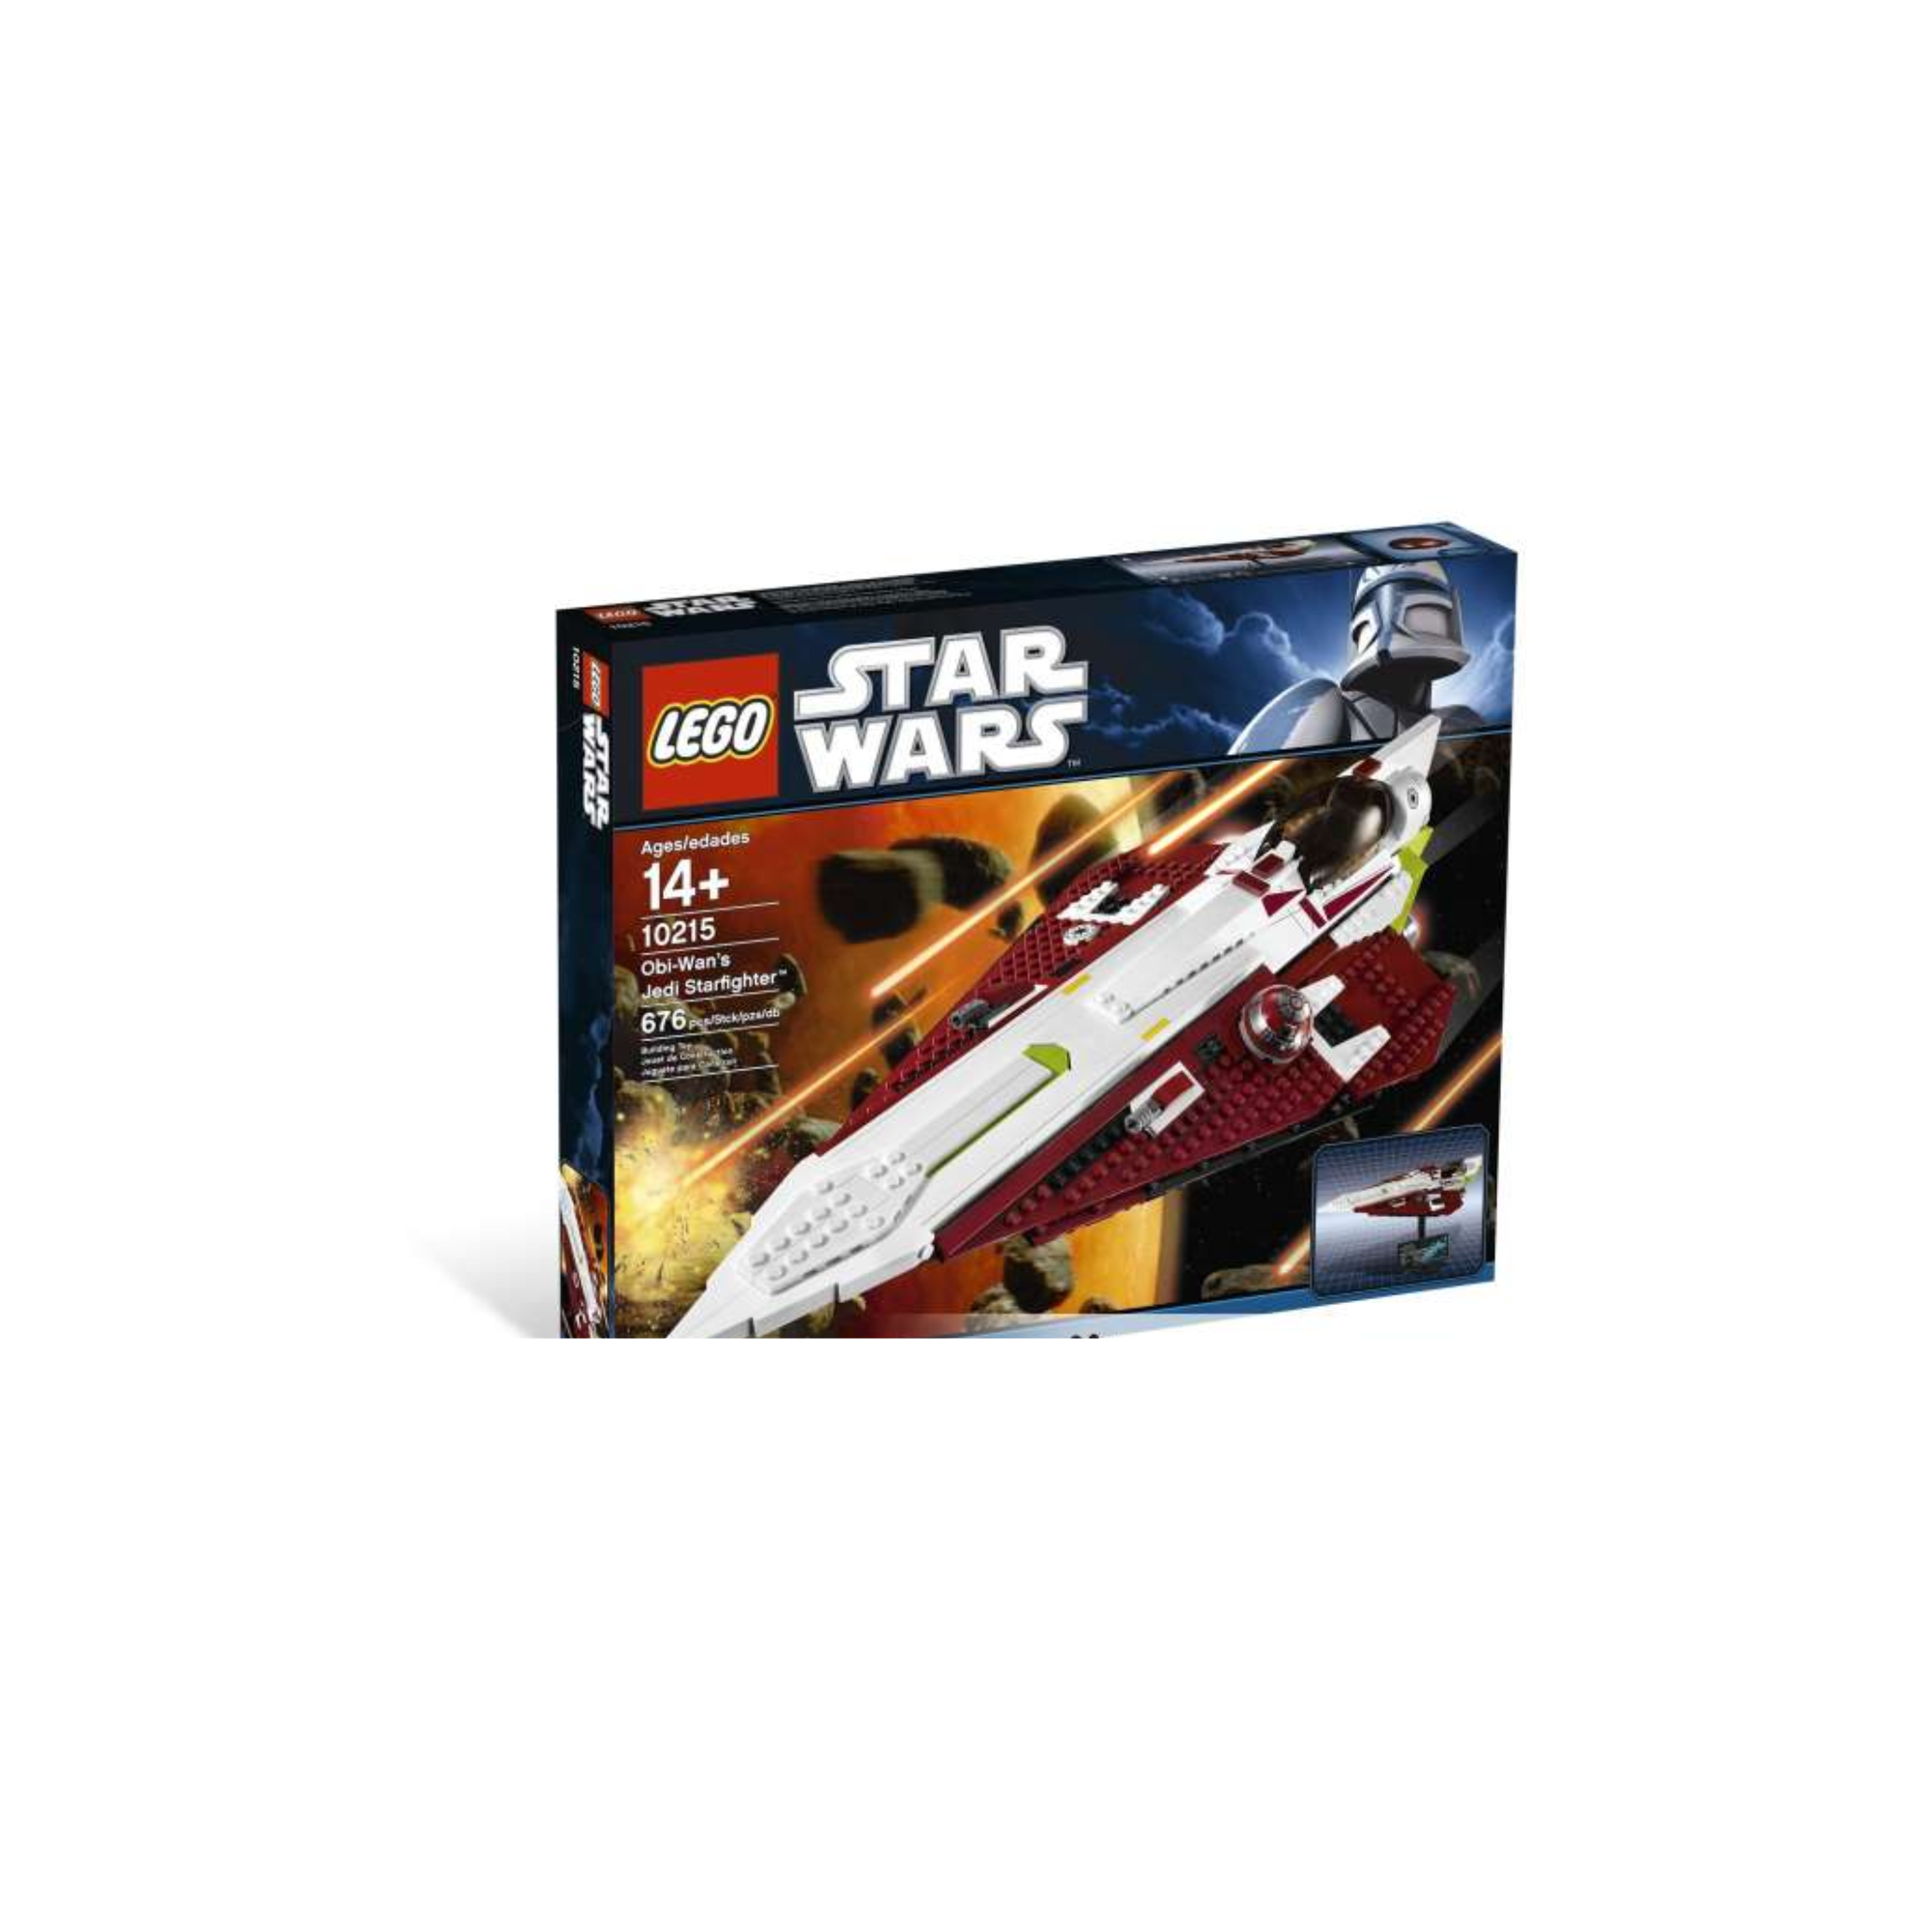 Star Wars Lego Obi-Wan's Jedi Starfighter